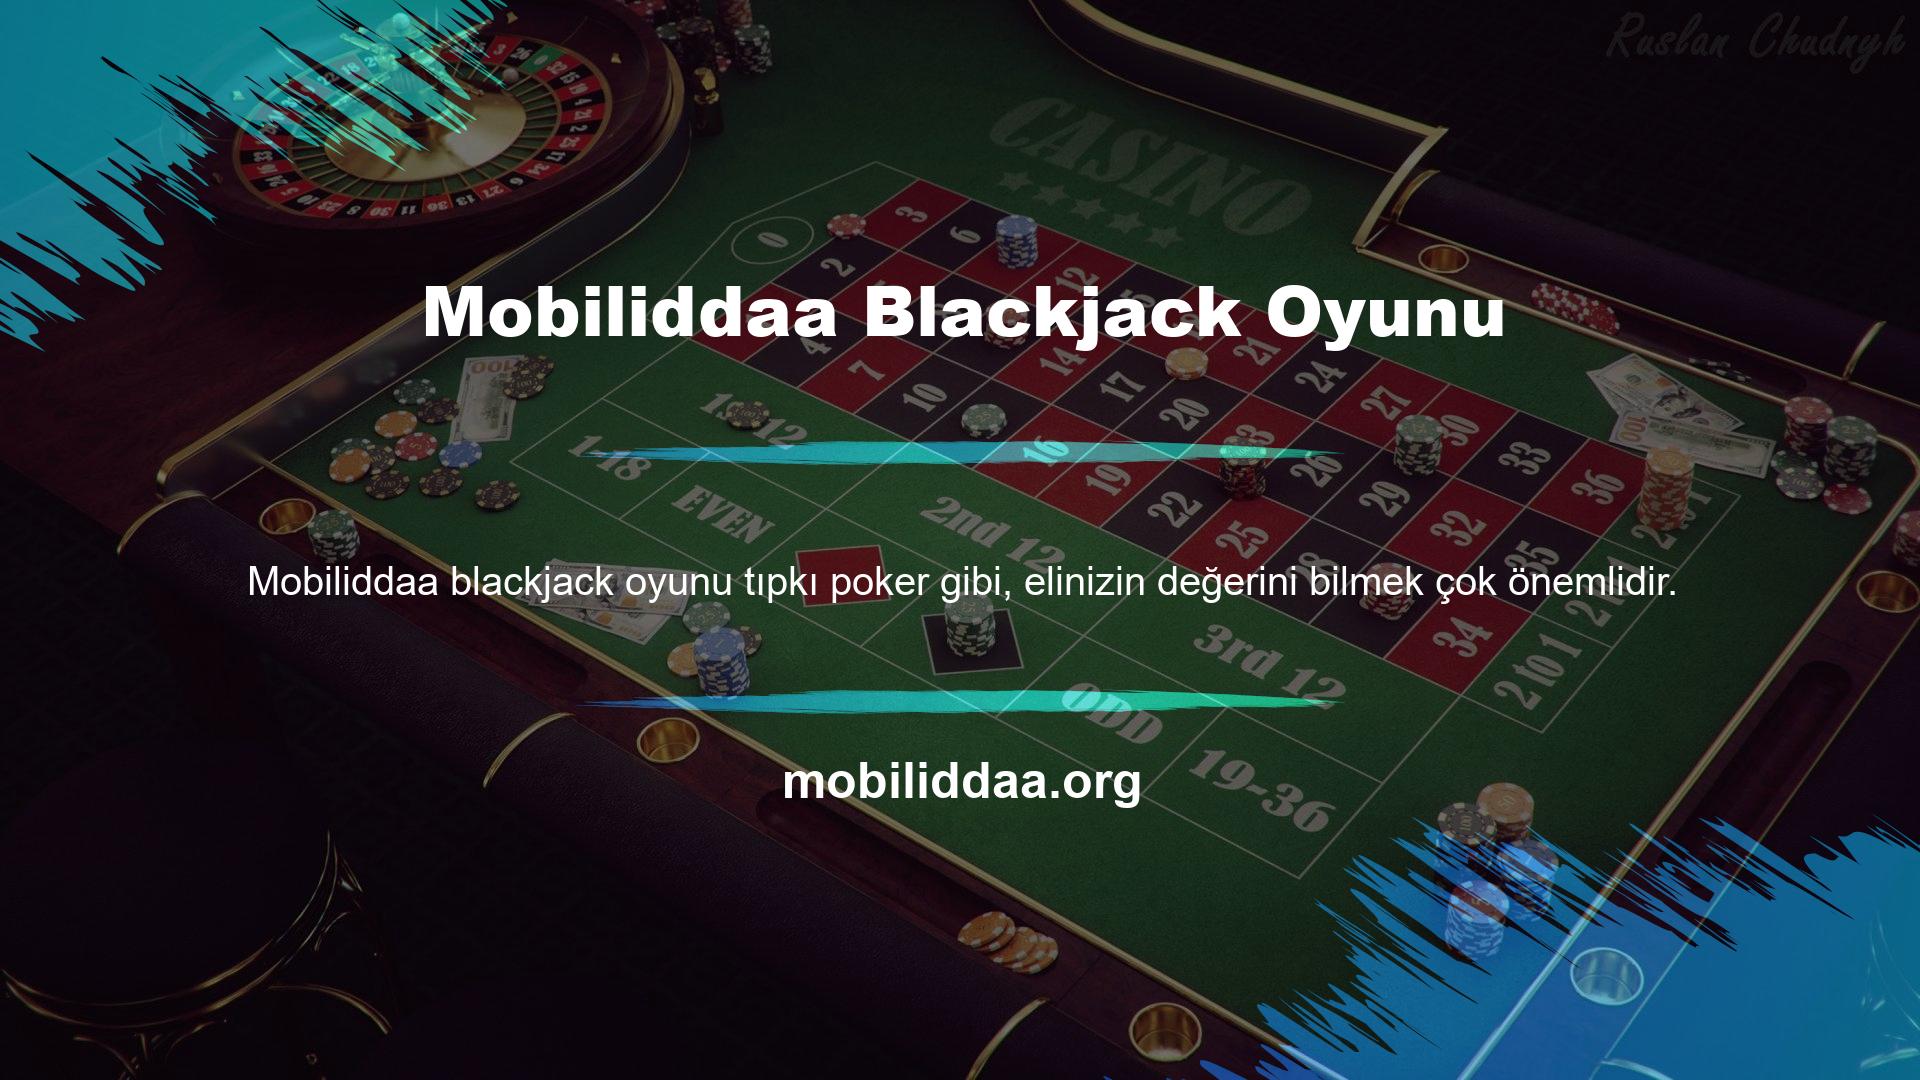 Elinizin değerini bilmek hem pokerde hem de blackjackte kazanma şansınızı artırır